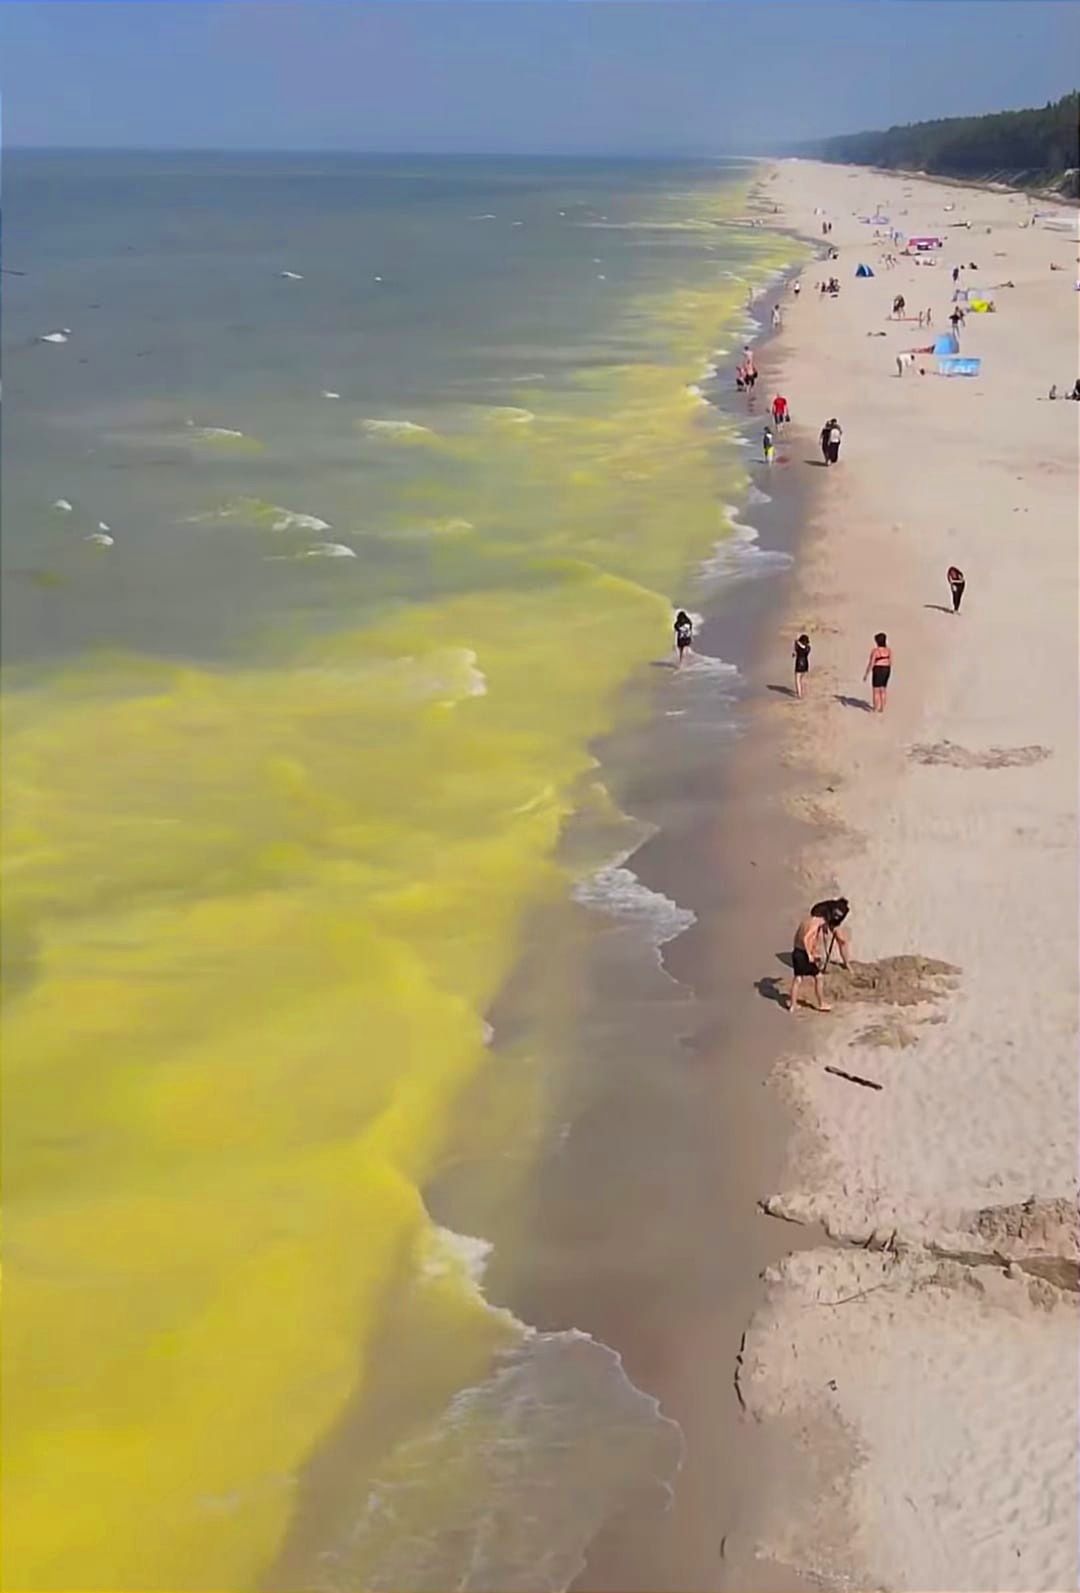 Woda w Bałtyku zmieniła kolor. Teraz jest żółta